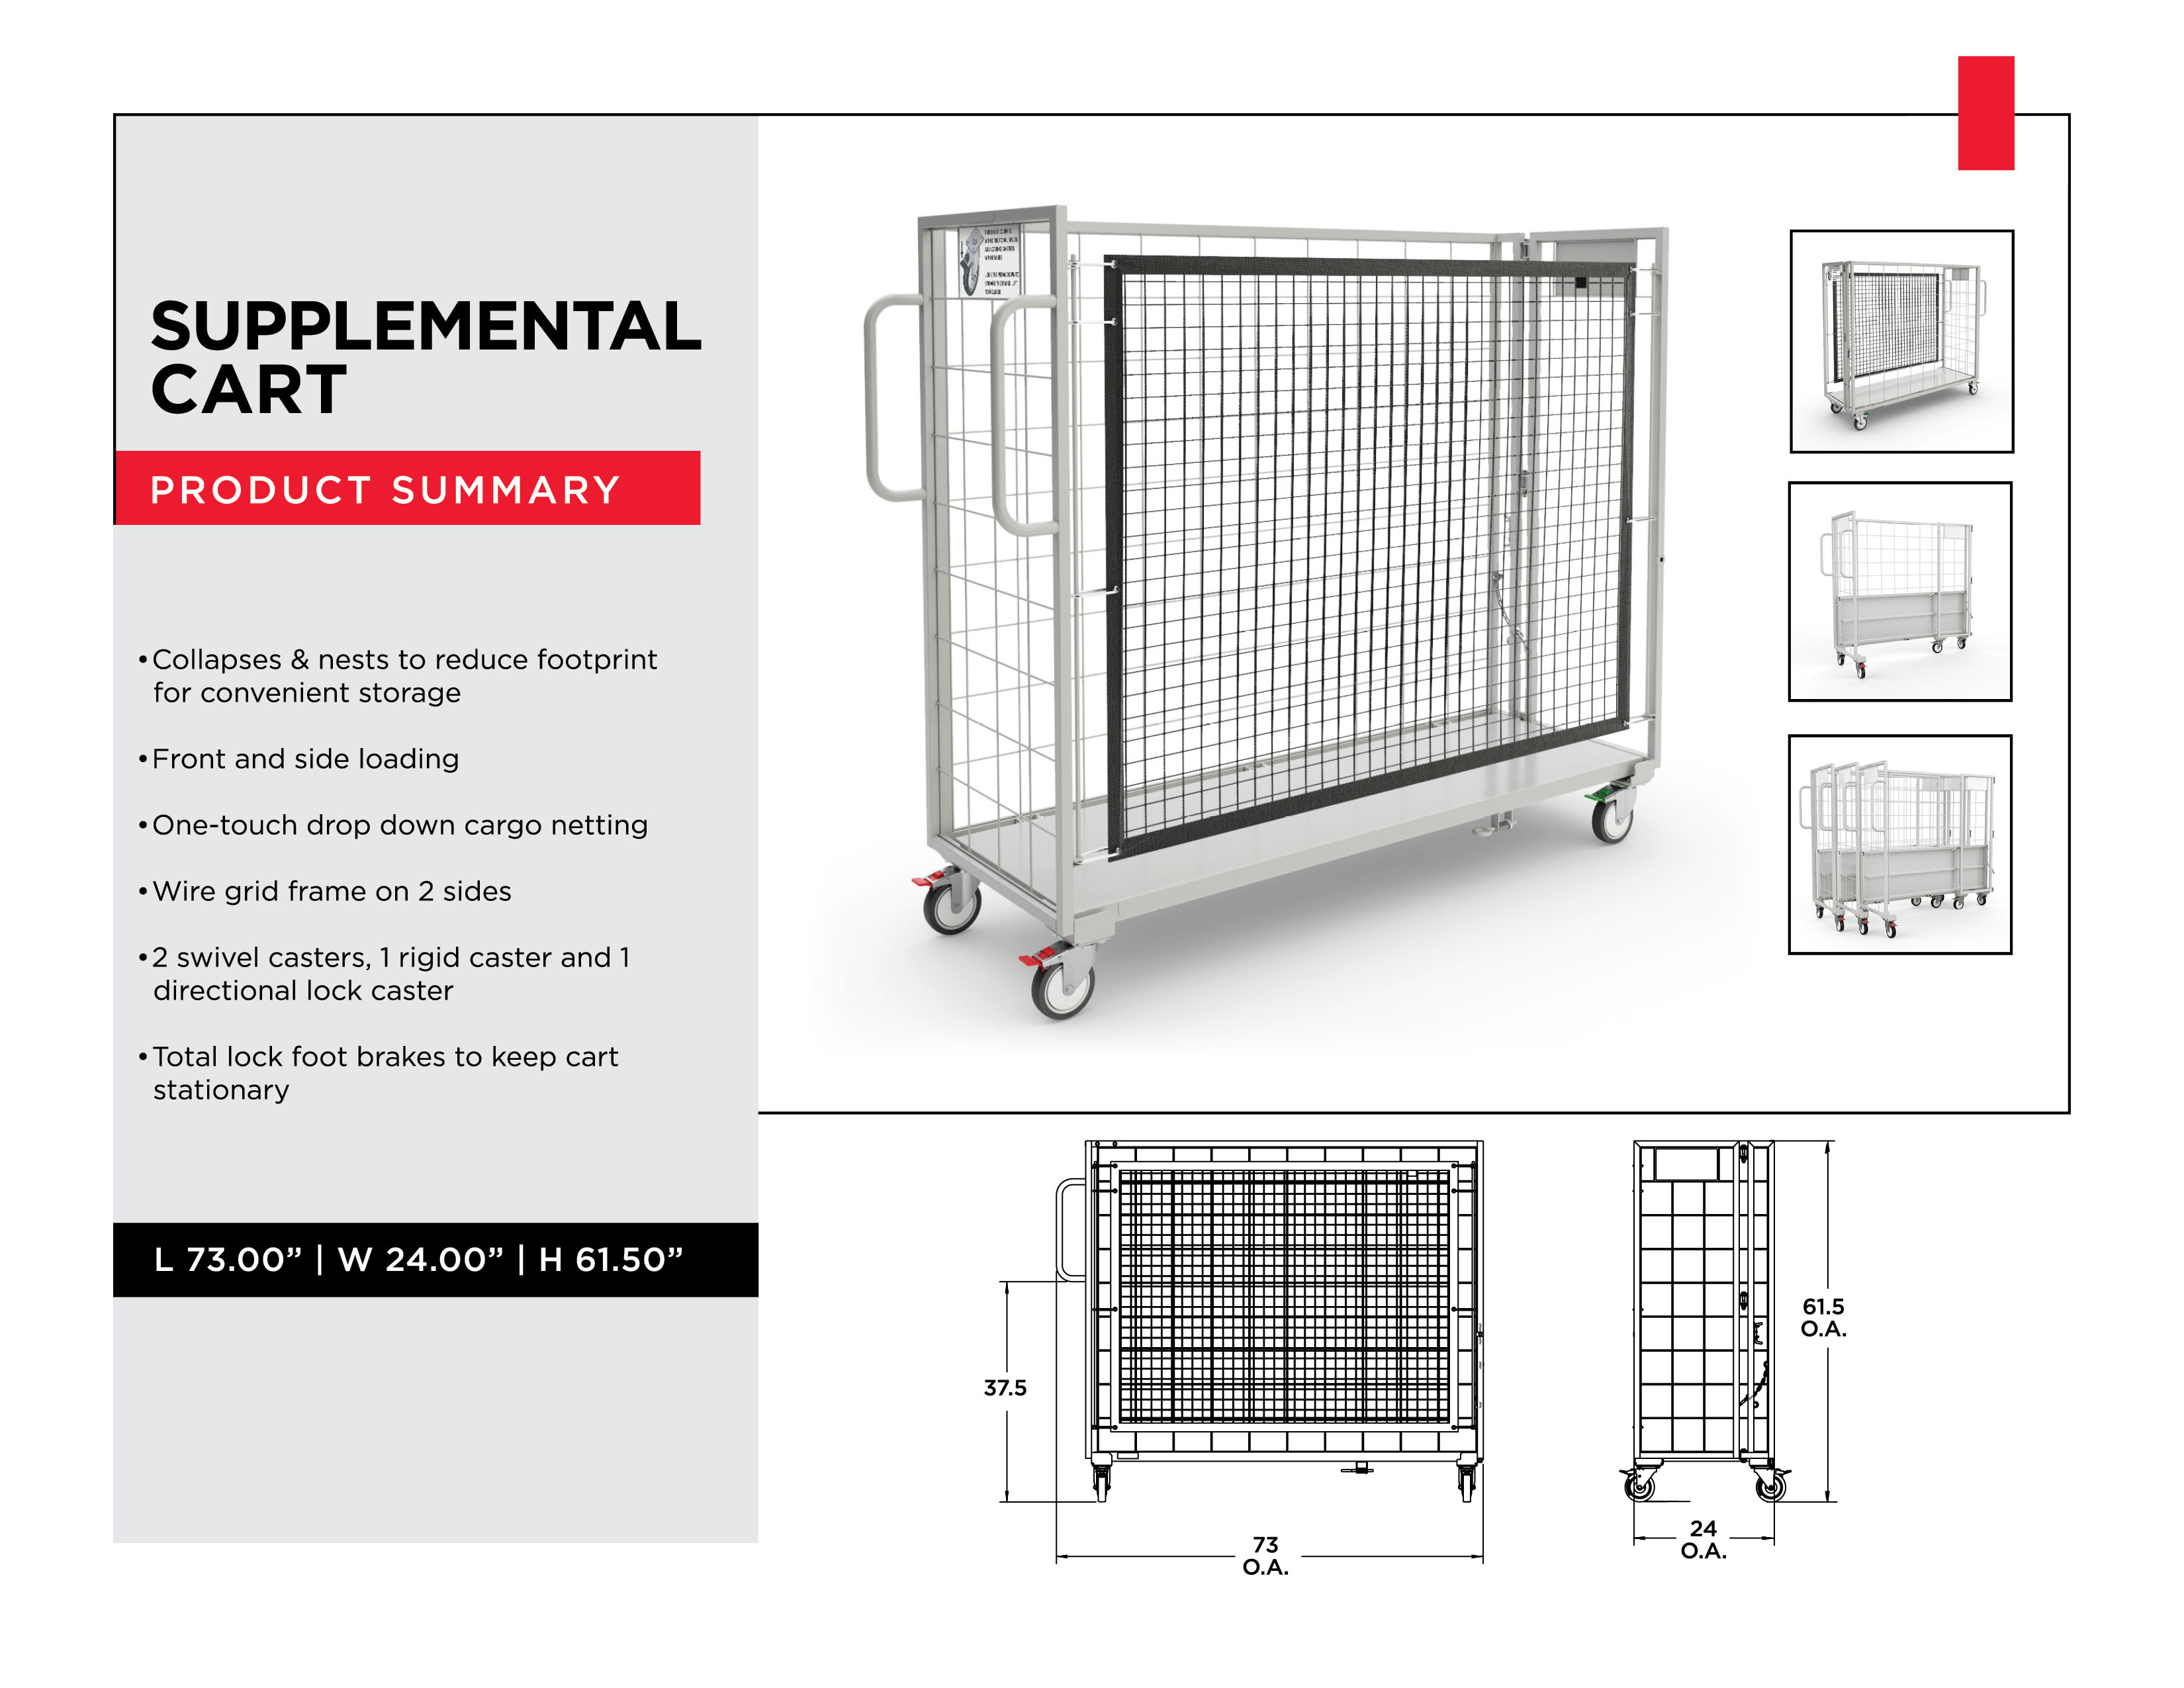 Industrial Sorting Carts - Supplemental Cart - Material Handling Solutions - Material Handling Equipment - Material Handling